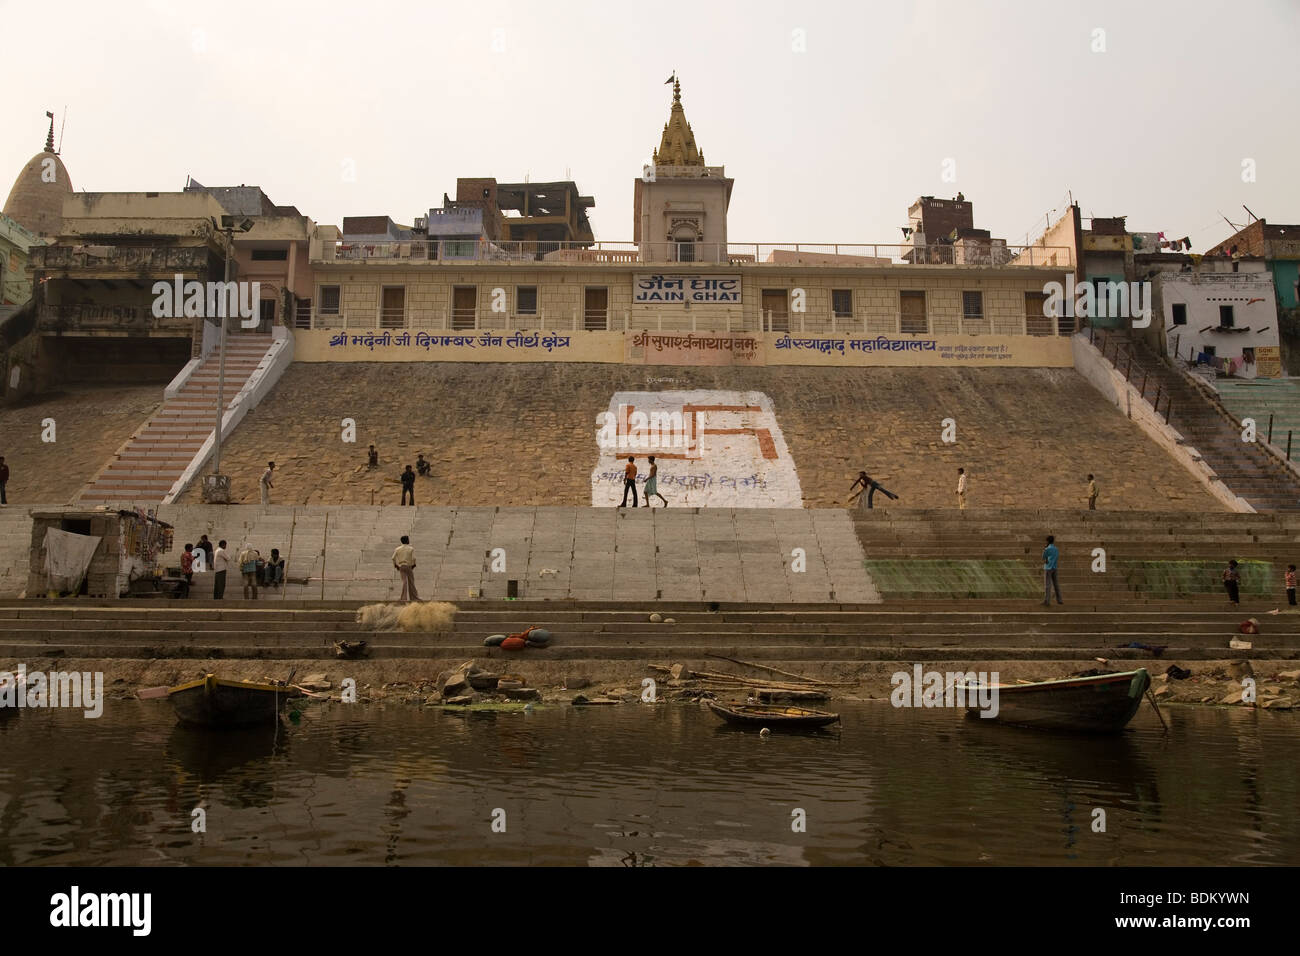 Le Ganga (le Gange) river tours les rives de la Jain Ghat de Varanasi, Inde. Une croix gammée orne les ghats. Banque D'Images